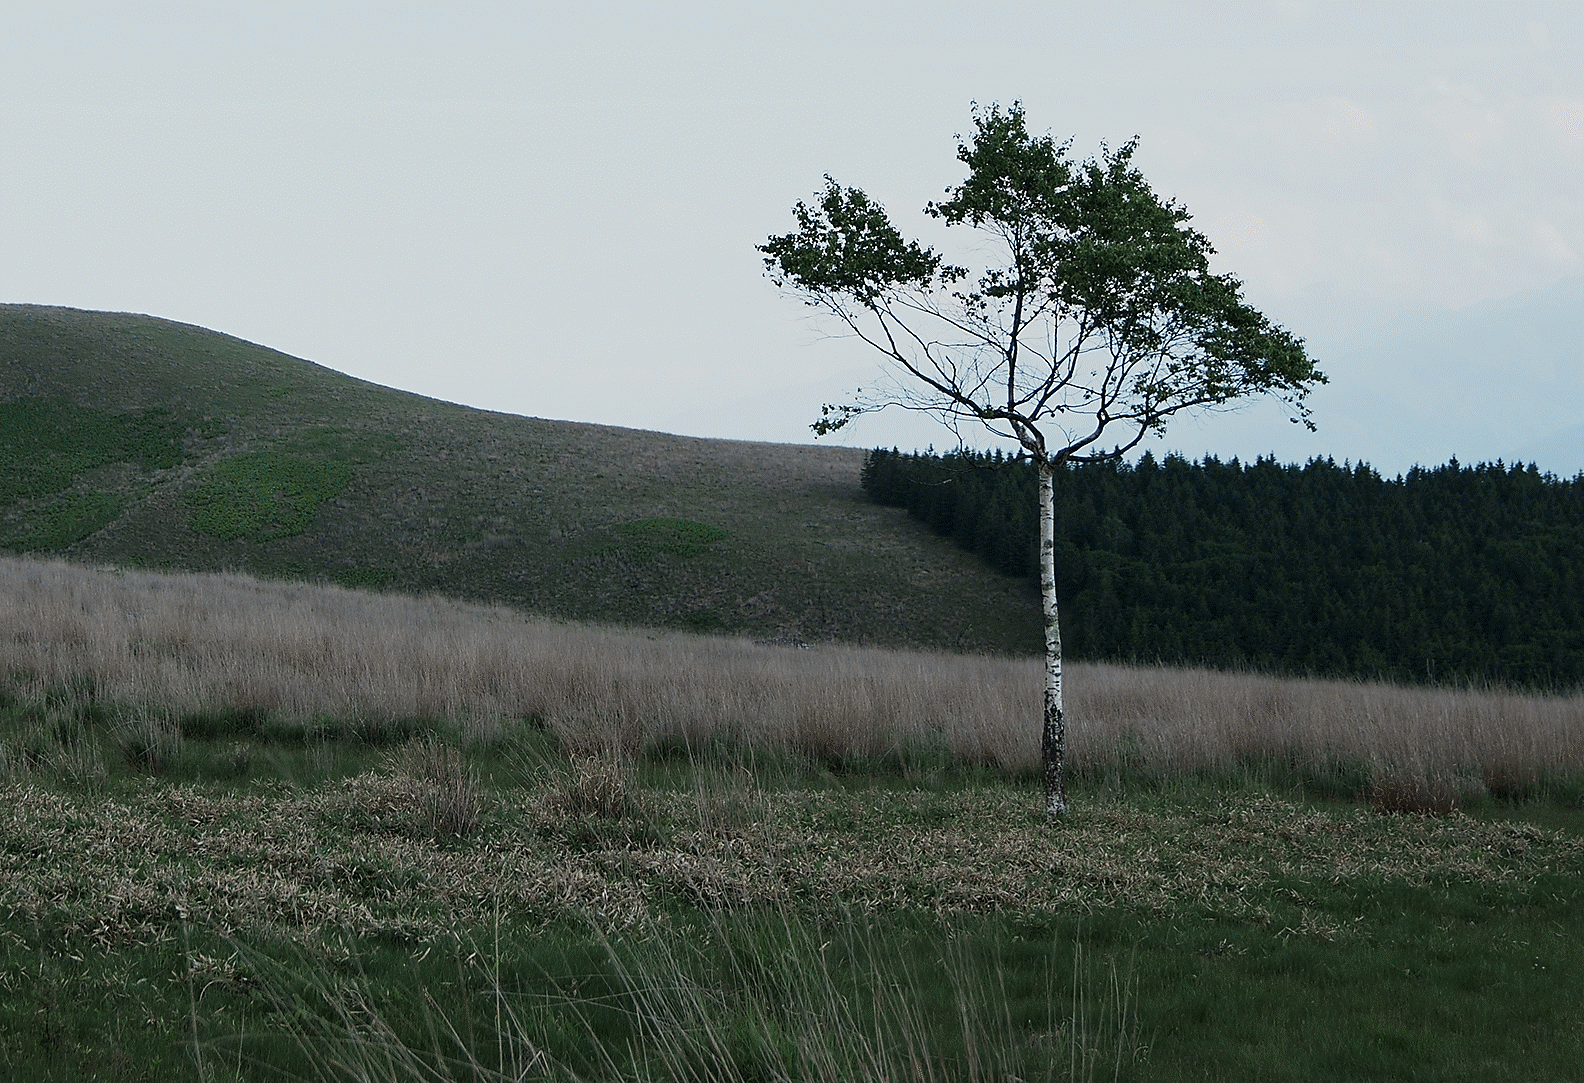 Image d'un paysage